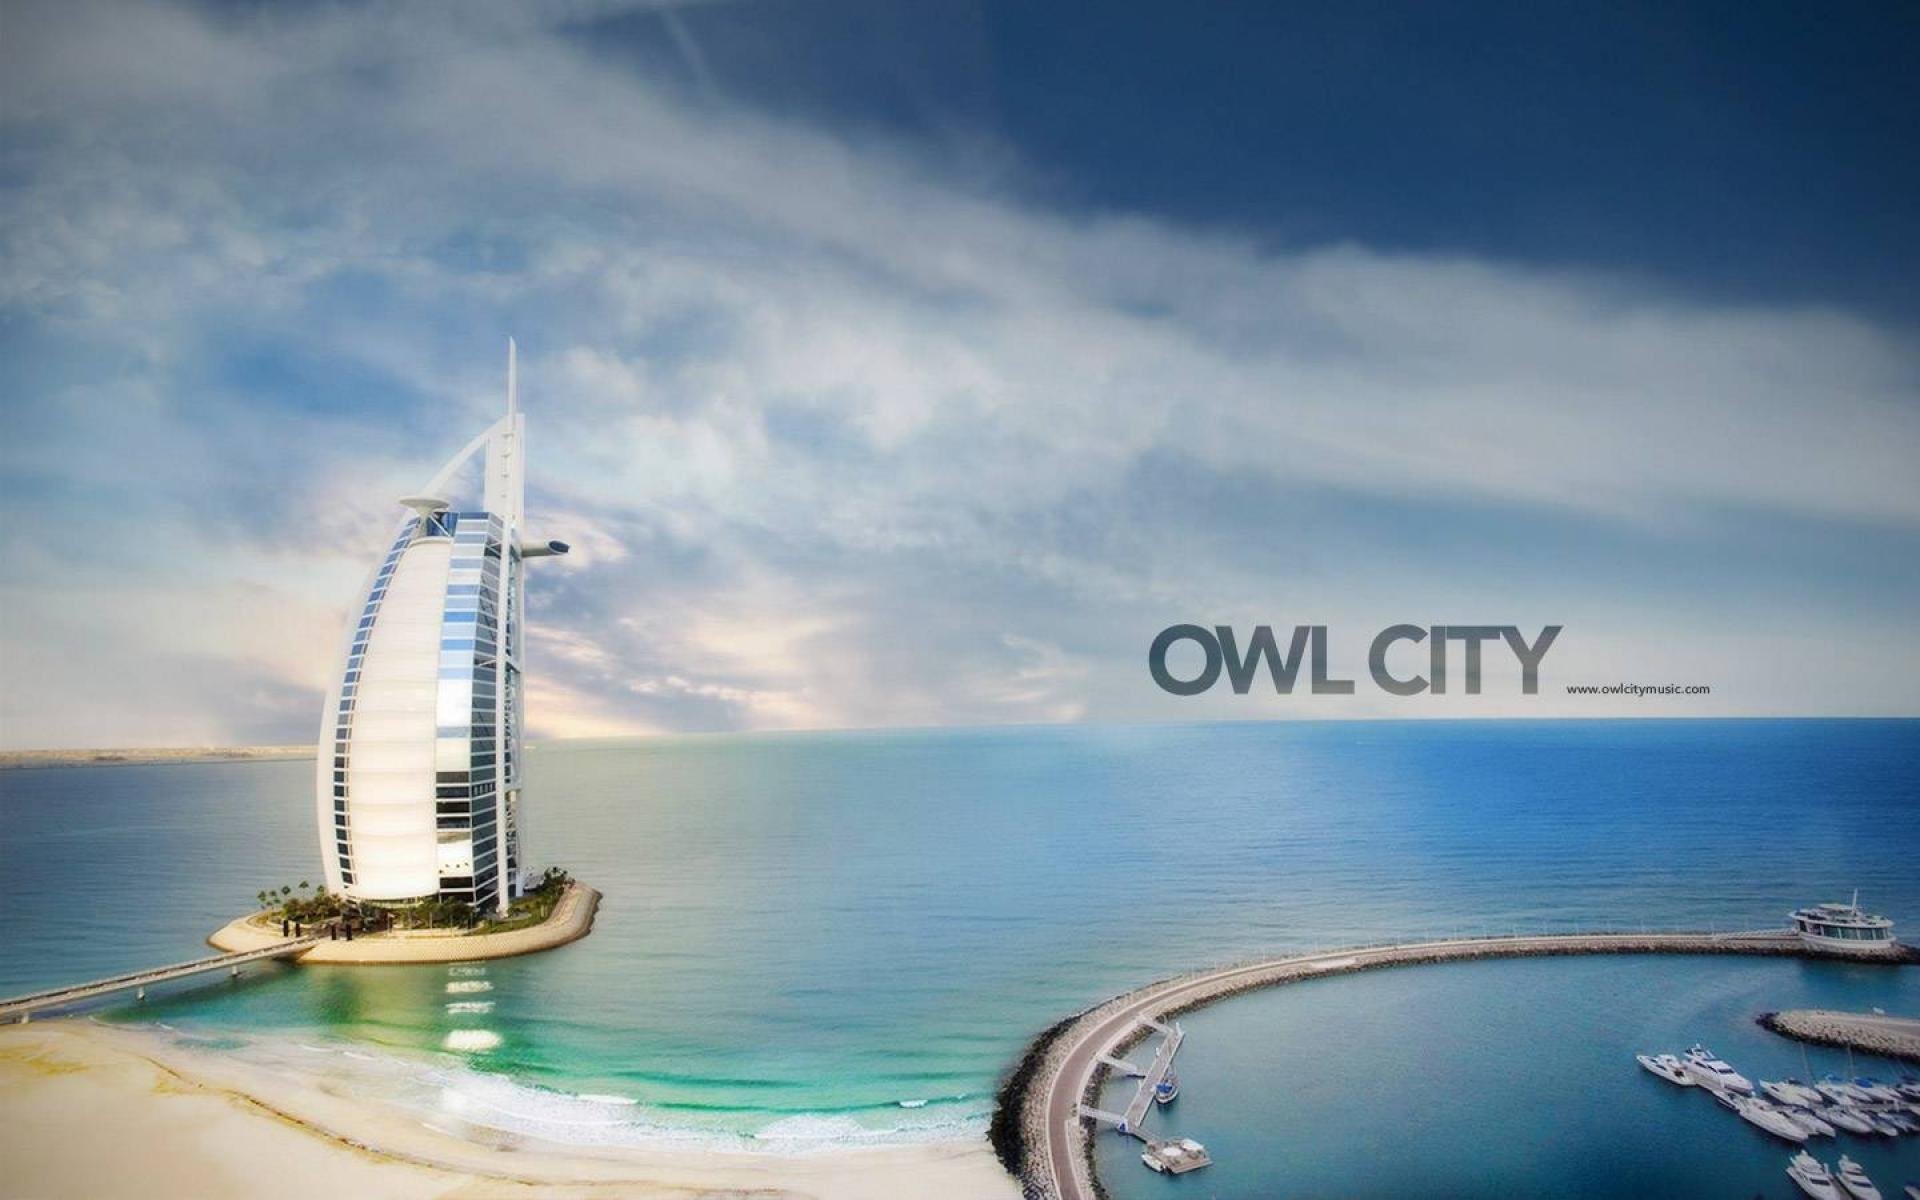 Owl City Ocean Eyes